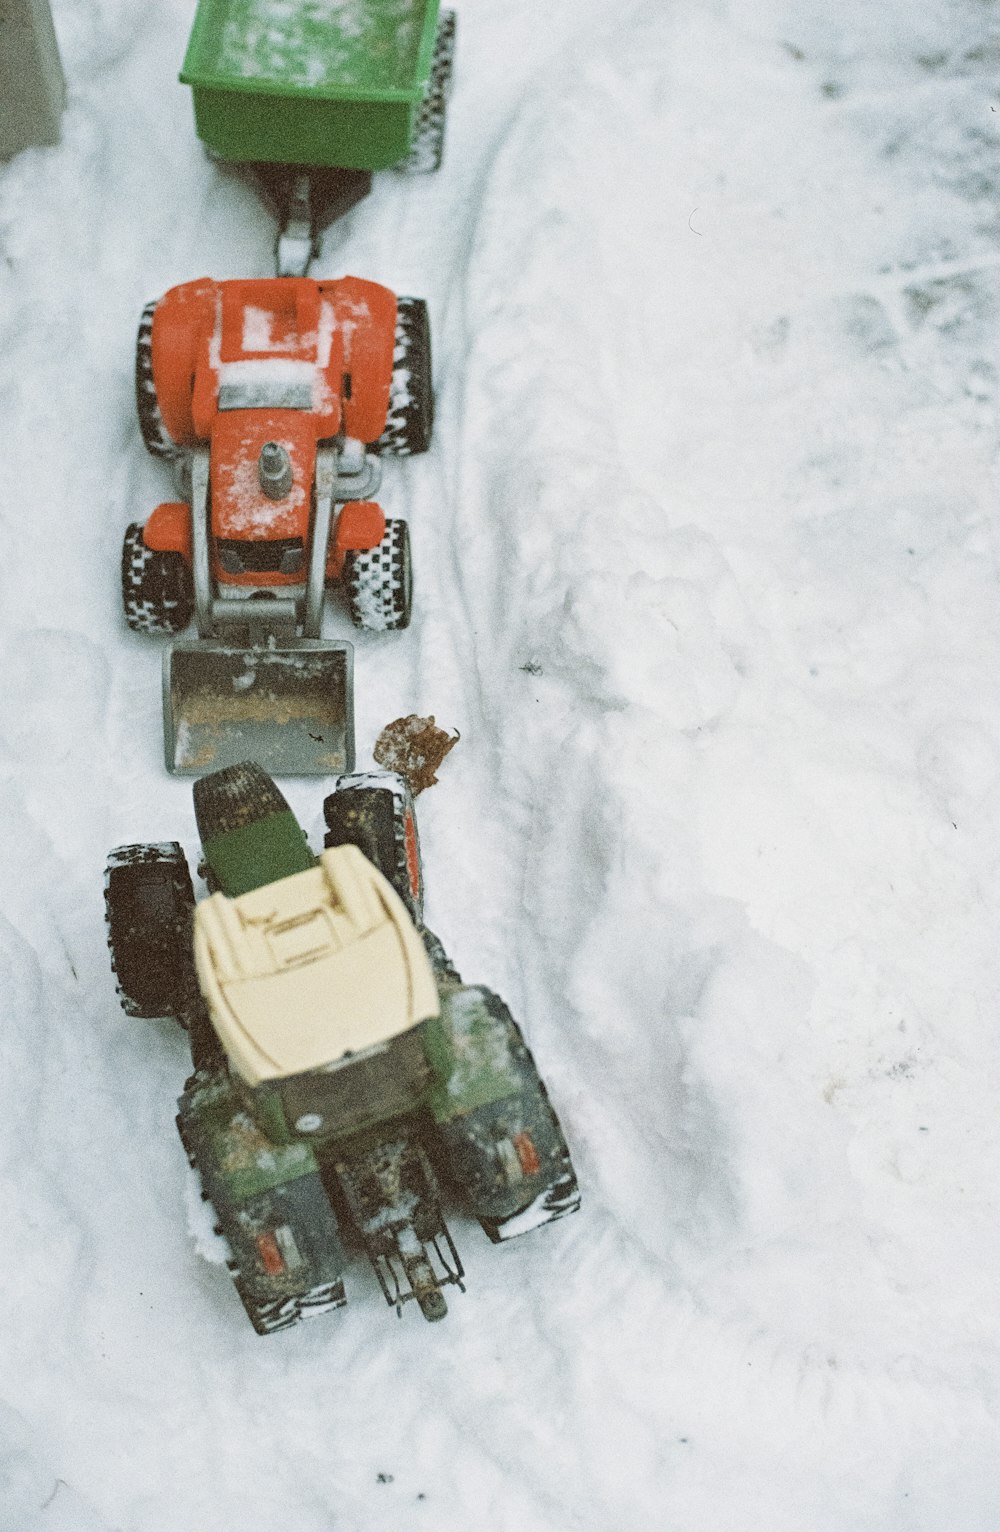 tre giocattoli rossi del veicolo sulla neve